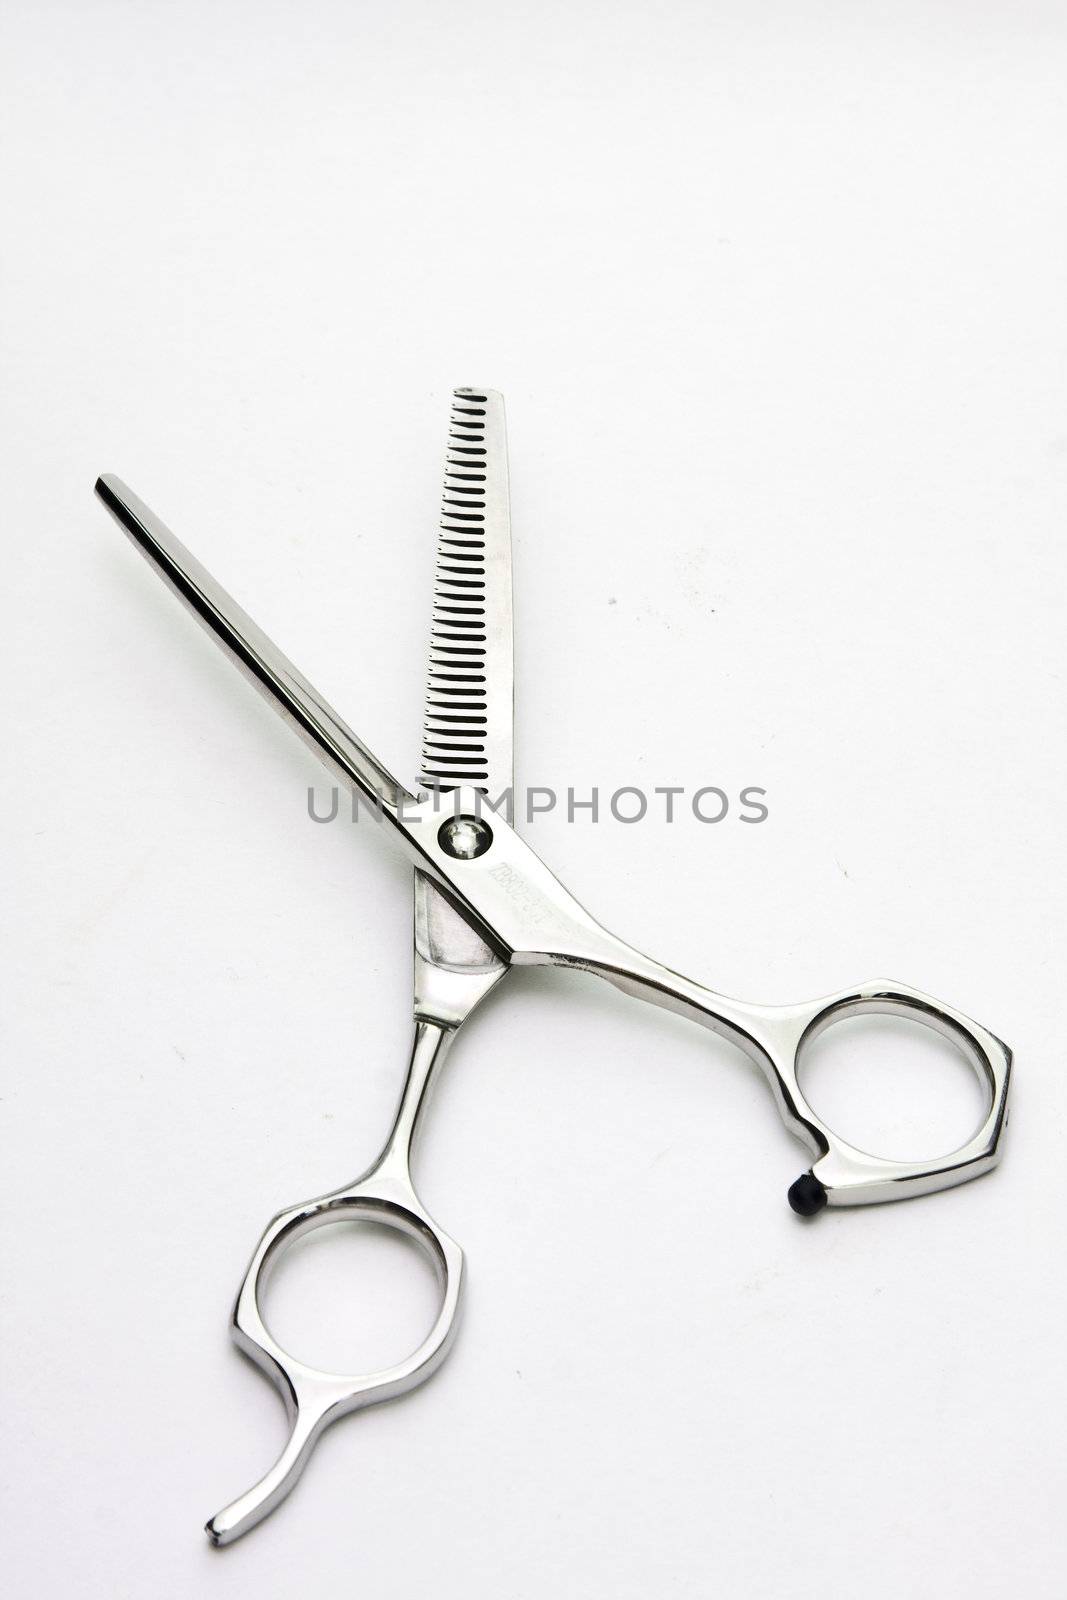  hair cutting scissors by cozyta